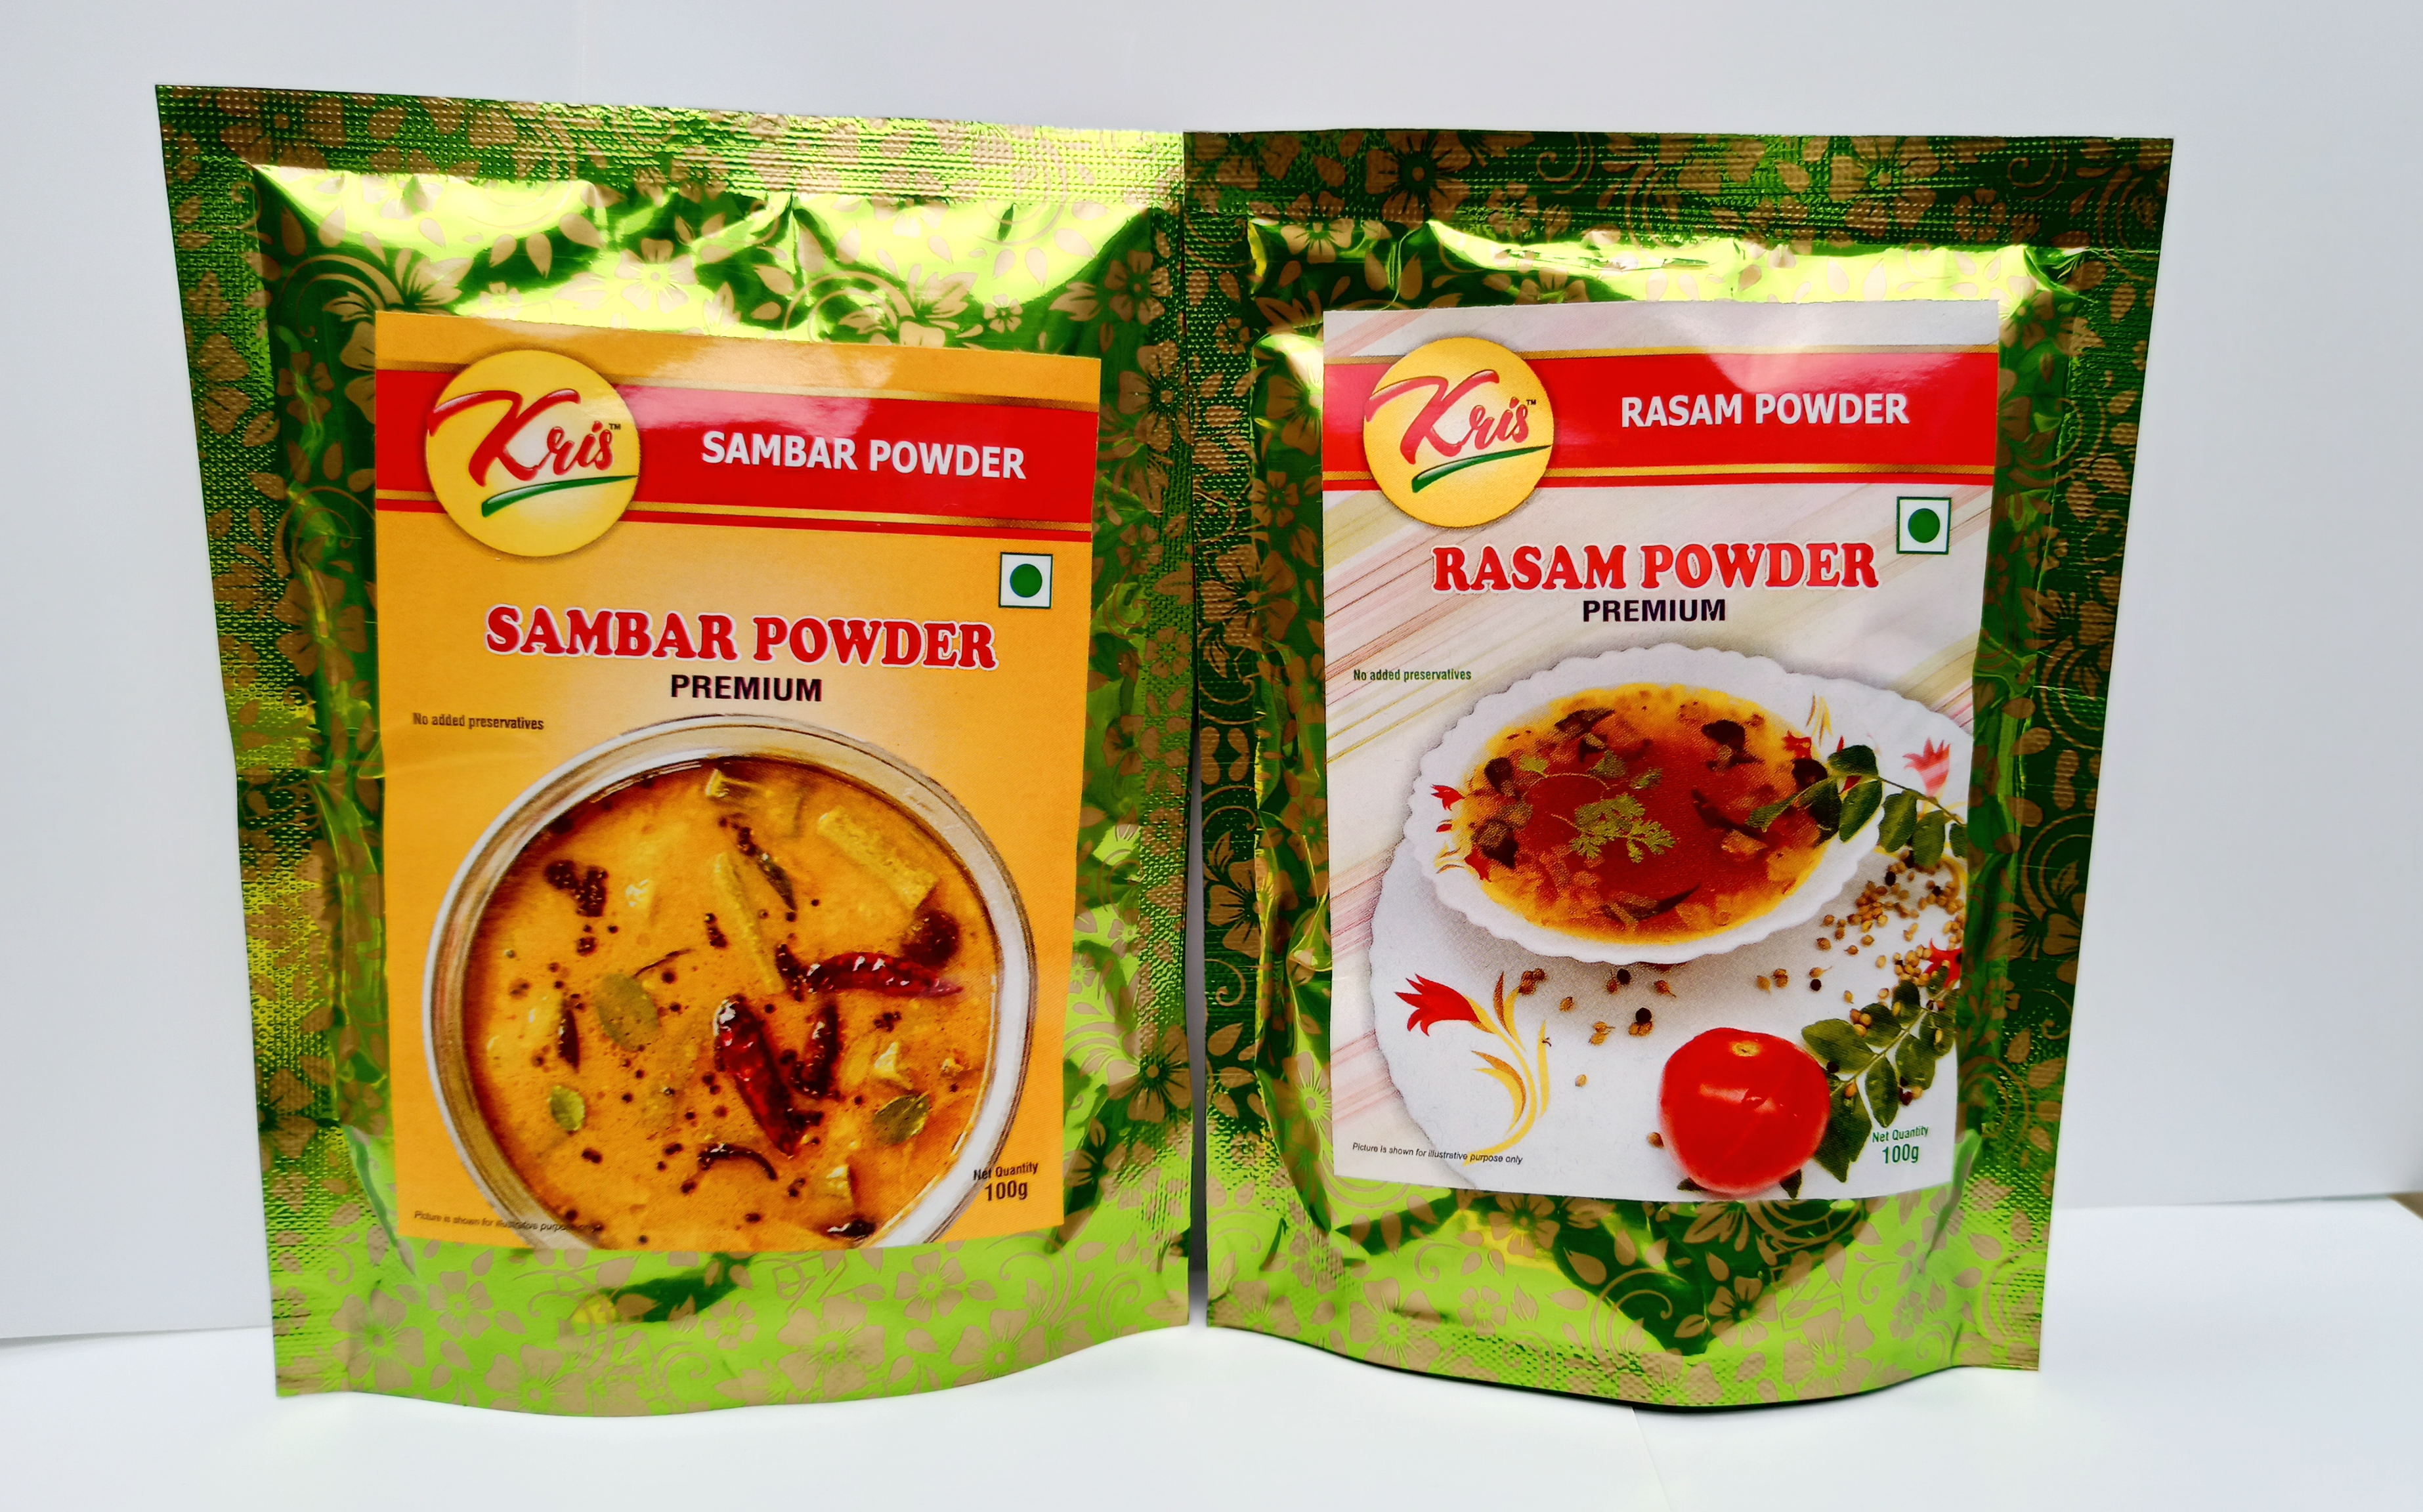 kris sambar powder and kris rasam powder